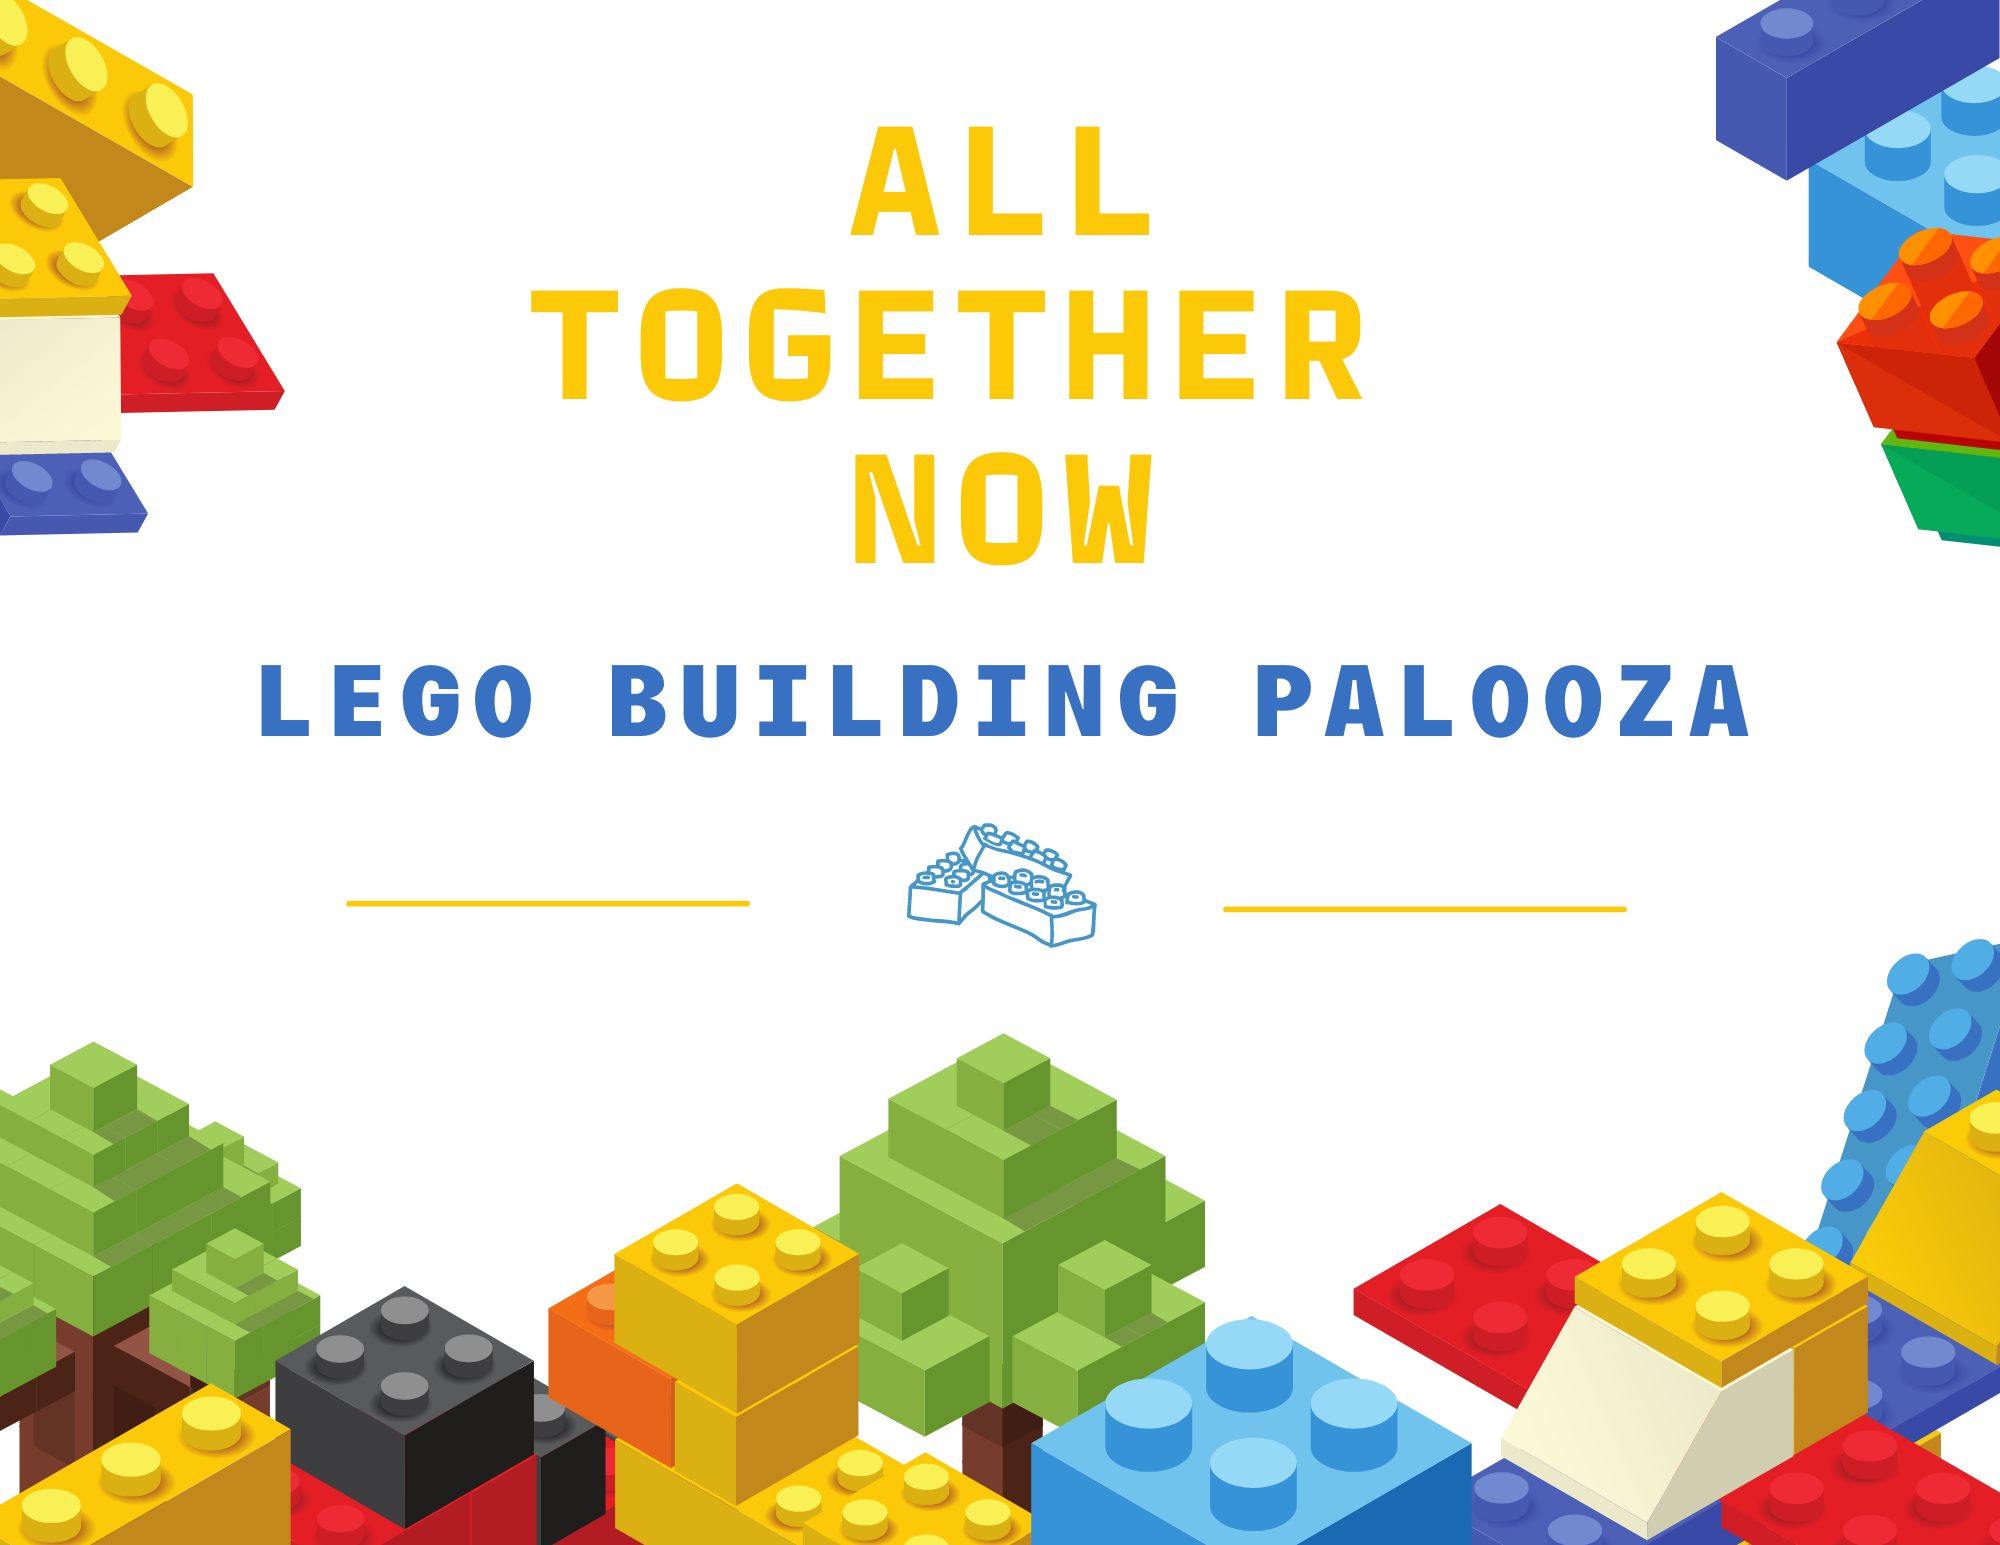 Lego Building Palooza